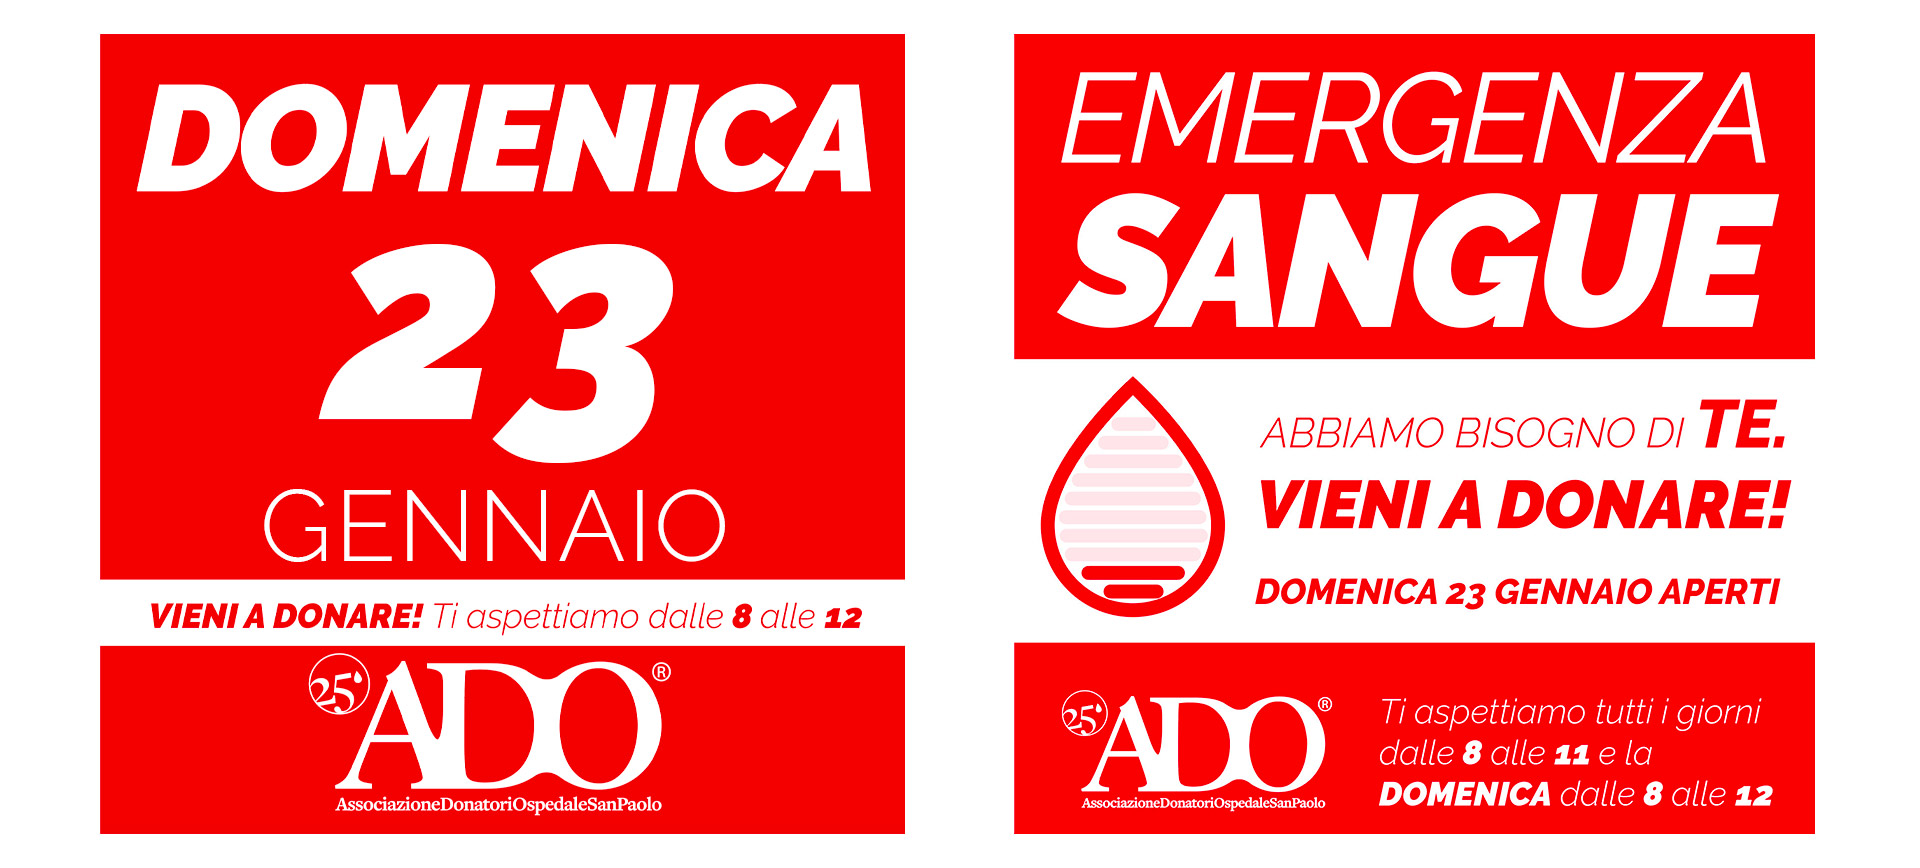 banner-home-emergenza-sangue-domeniche-donazione-sangue-milano-2022-ado-donatori-ospedale-san-paolo